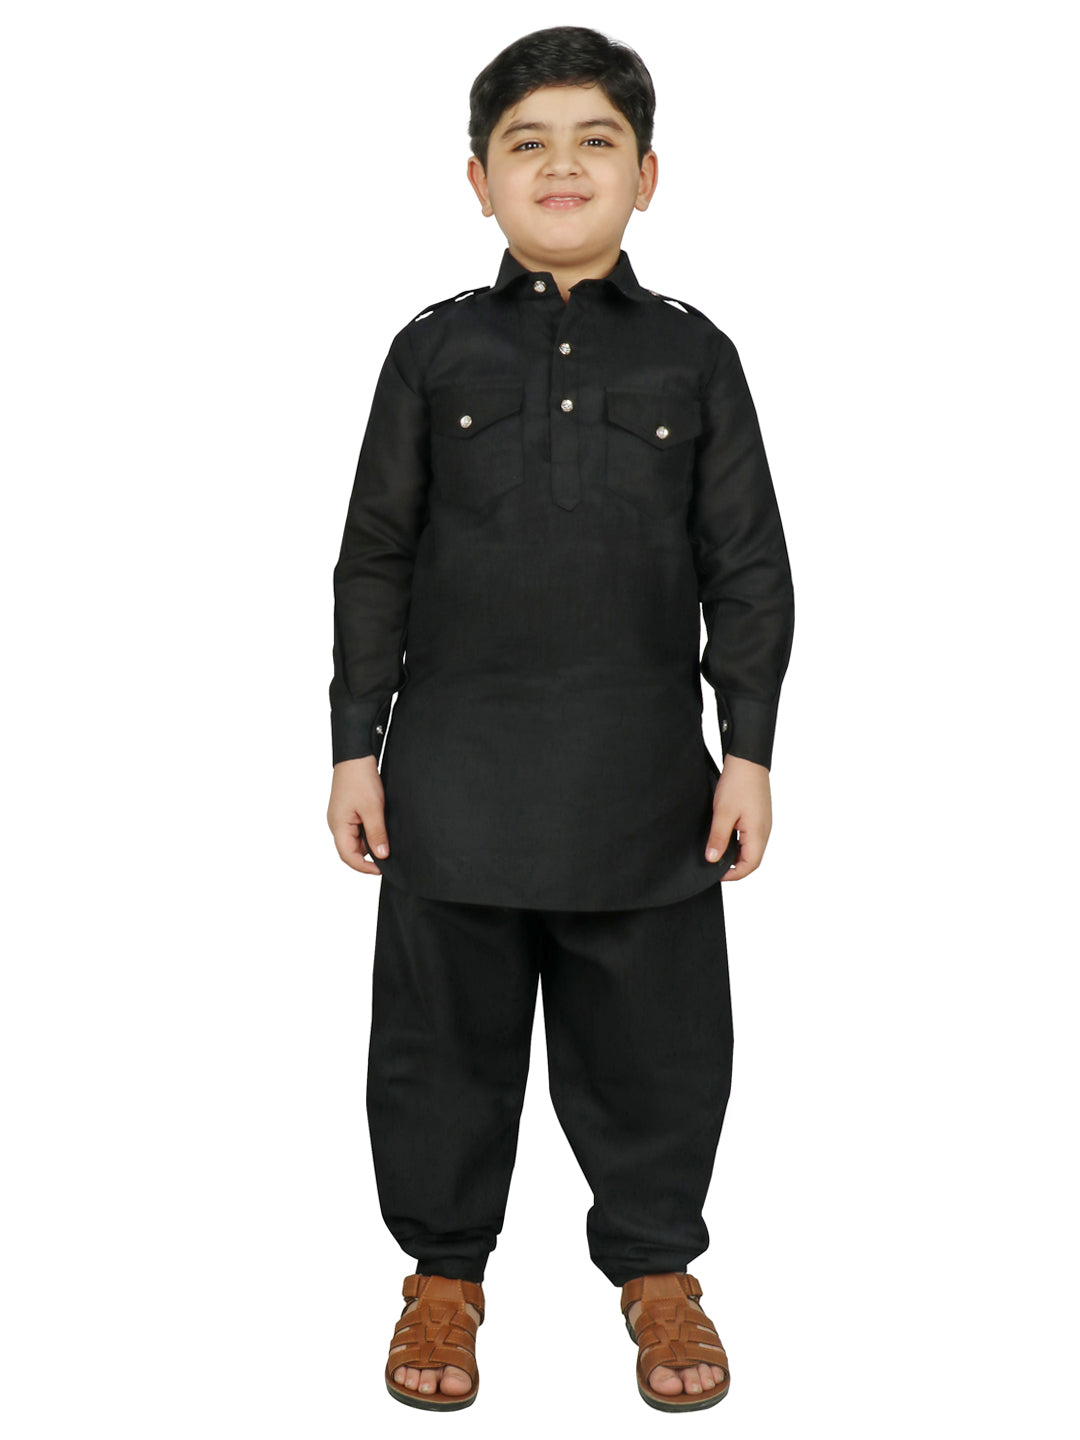 SG YUVRAJ Pathani Suits For Boys (YP-113)